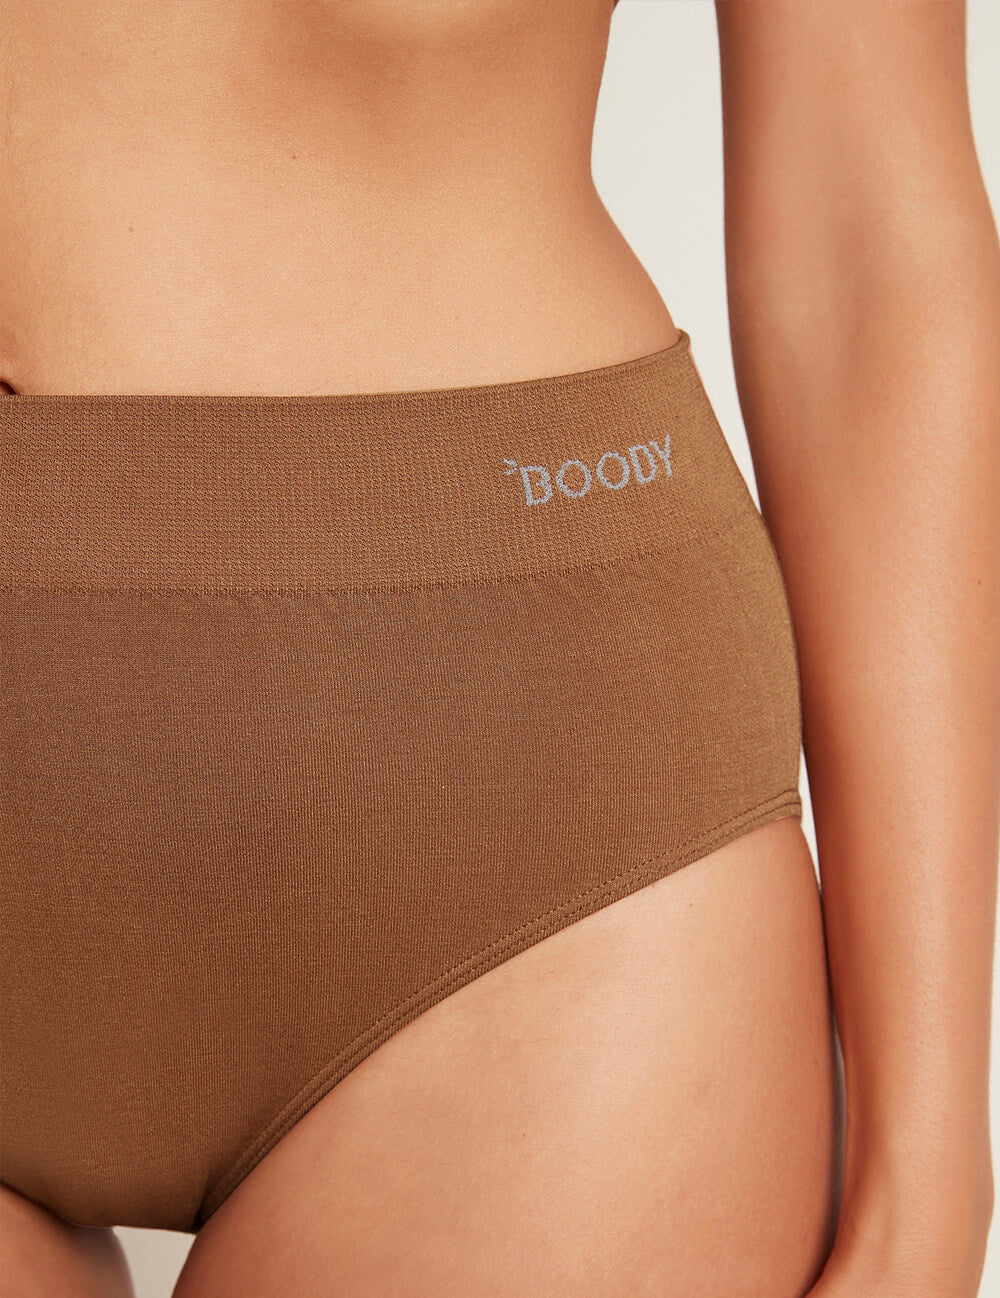 Boody Eco Wear Full Briefs - Women's - Package of 2